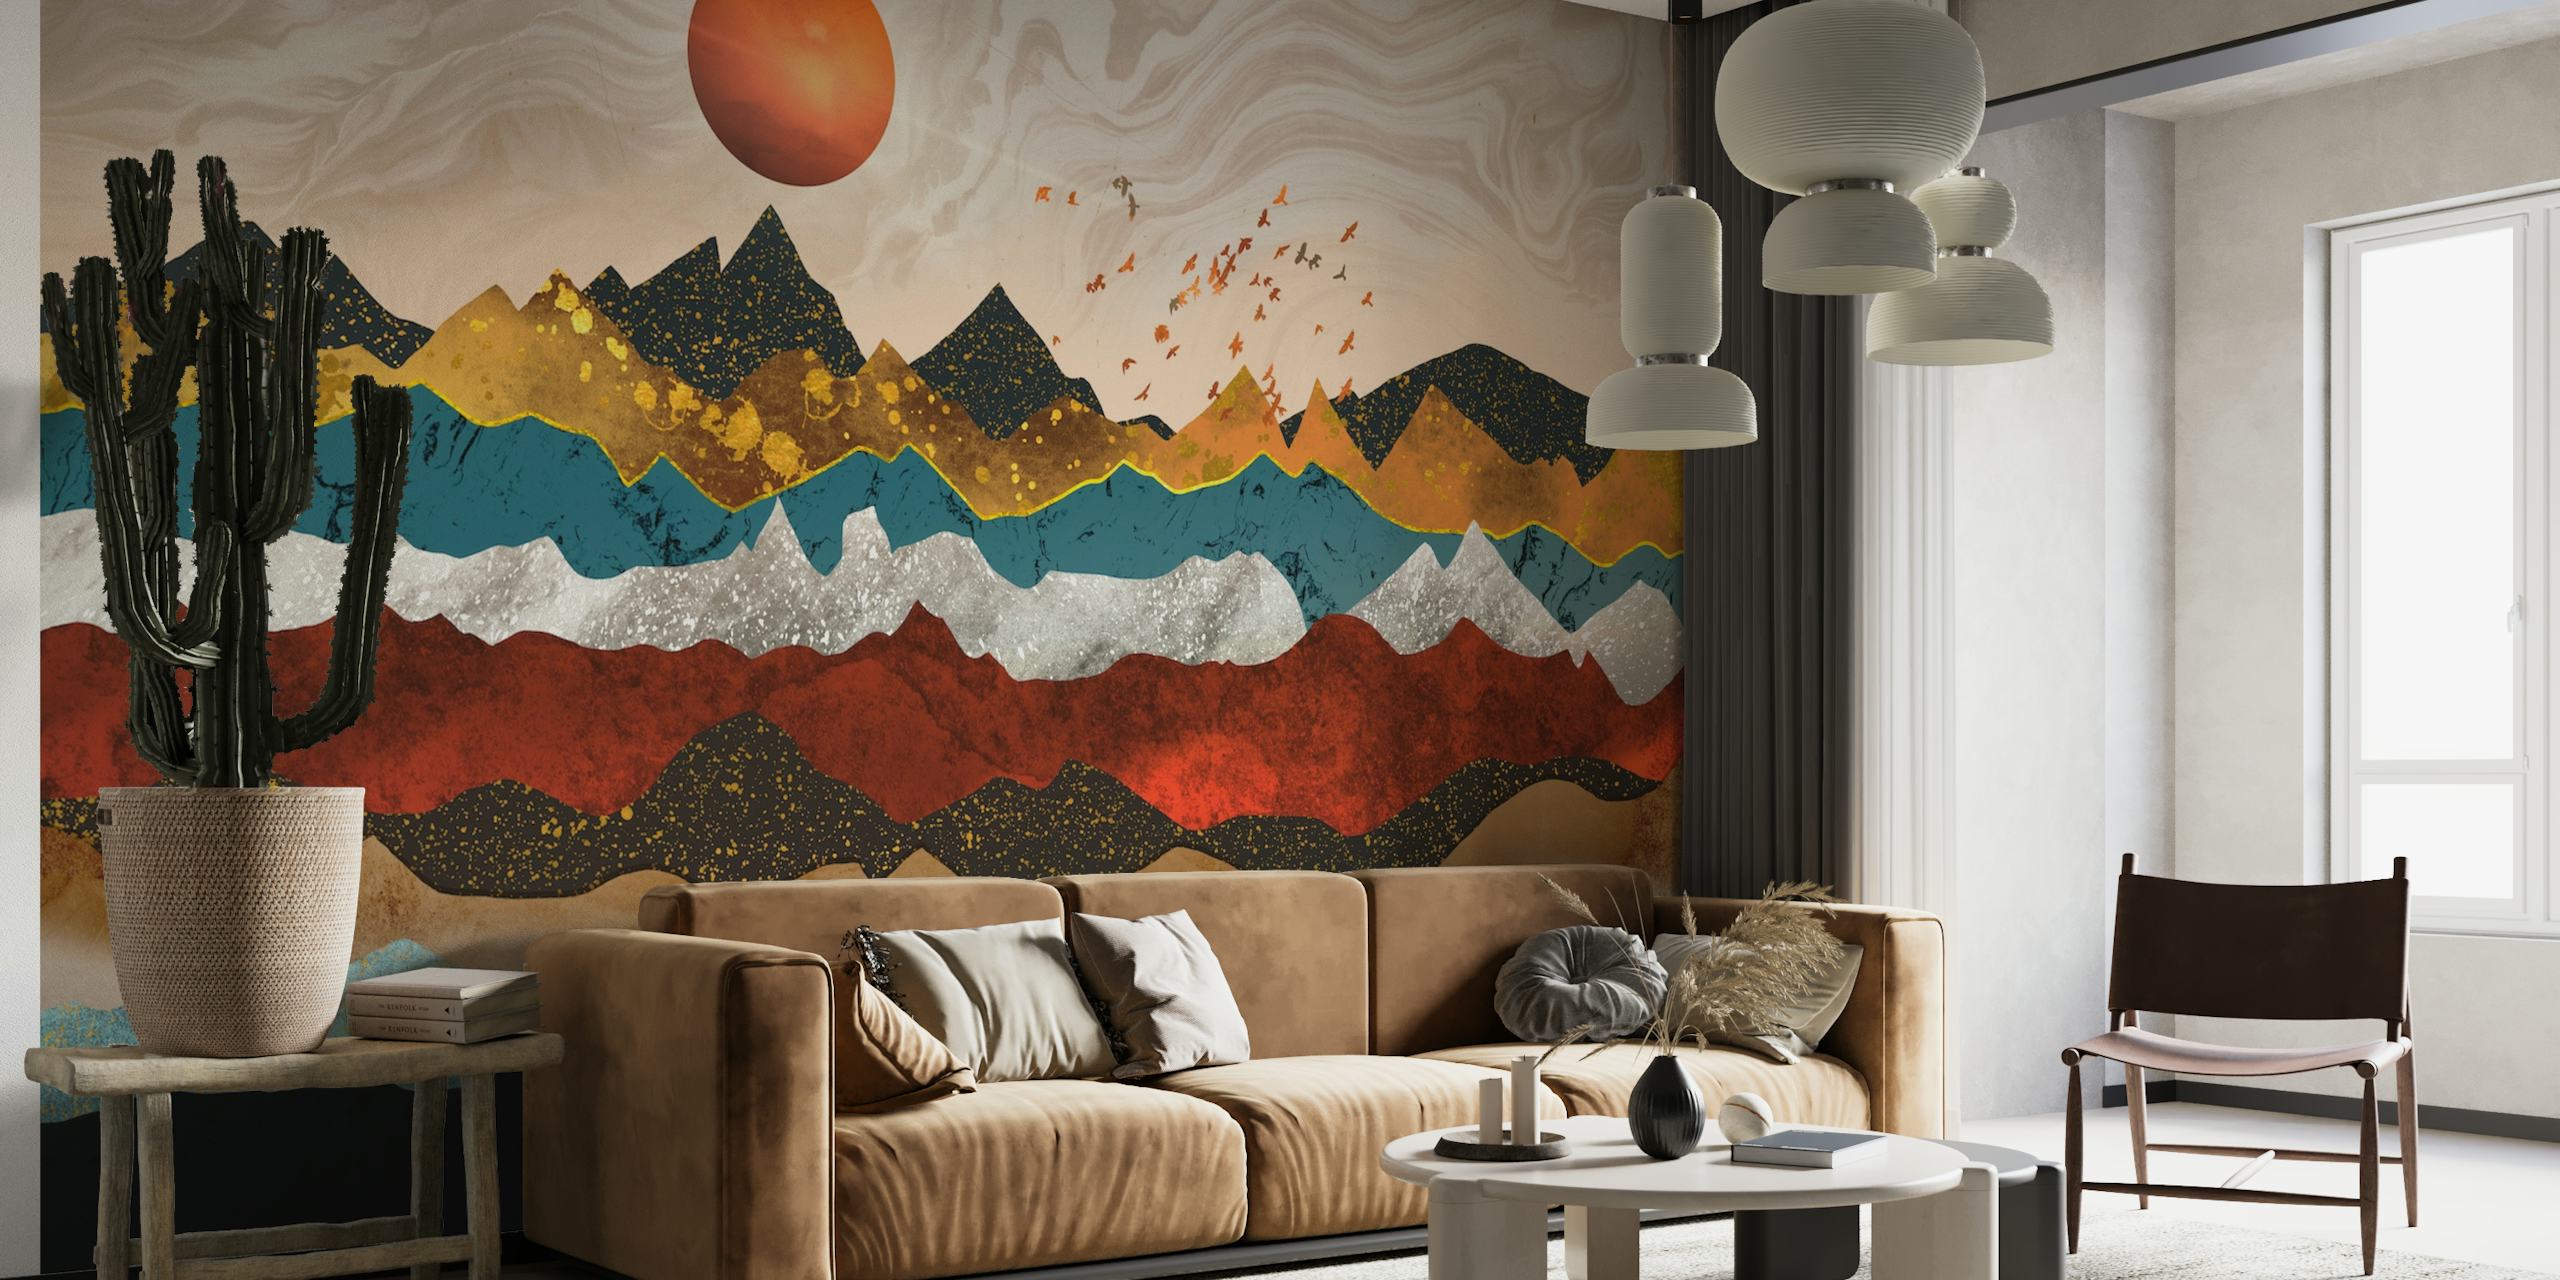 The precious mountains wallpaper